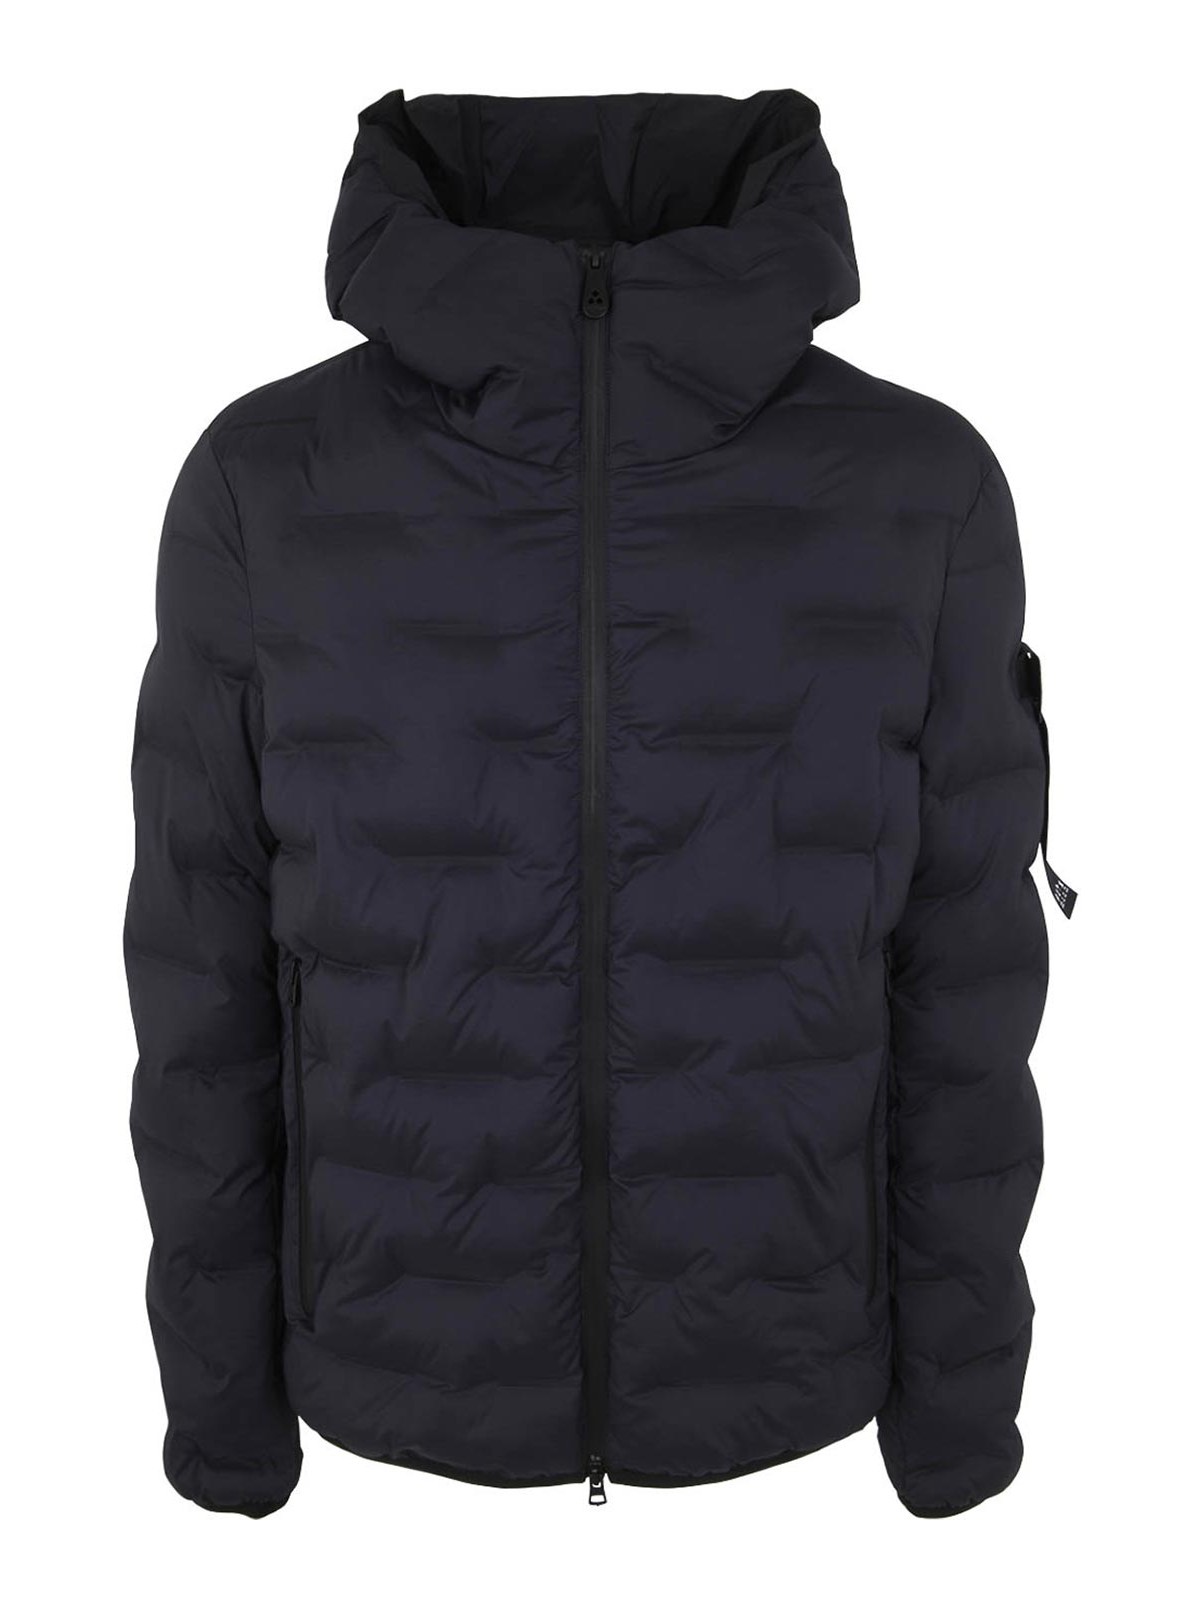 Casual jackets Peuterey - Brando sjn 01 peuterey padded jacket ...